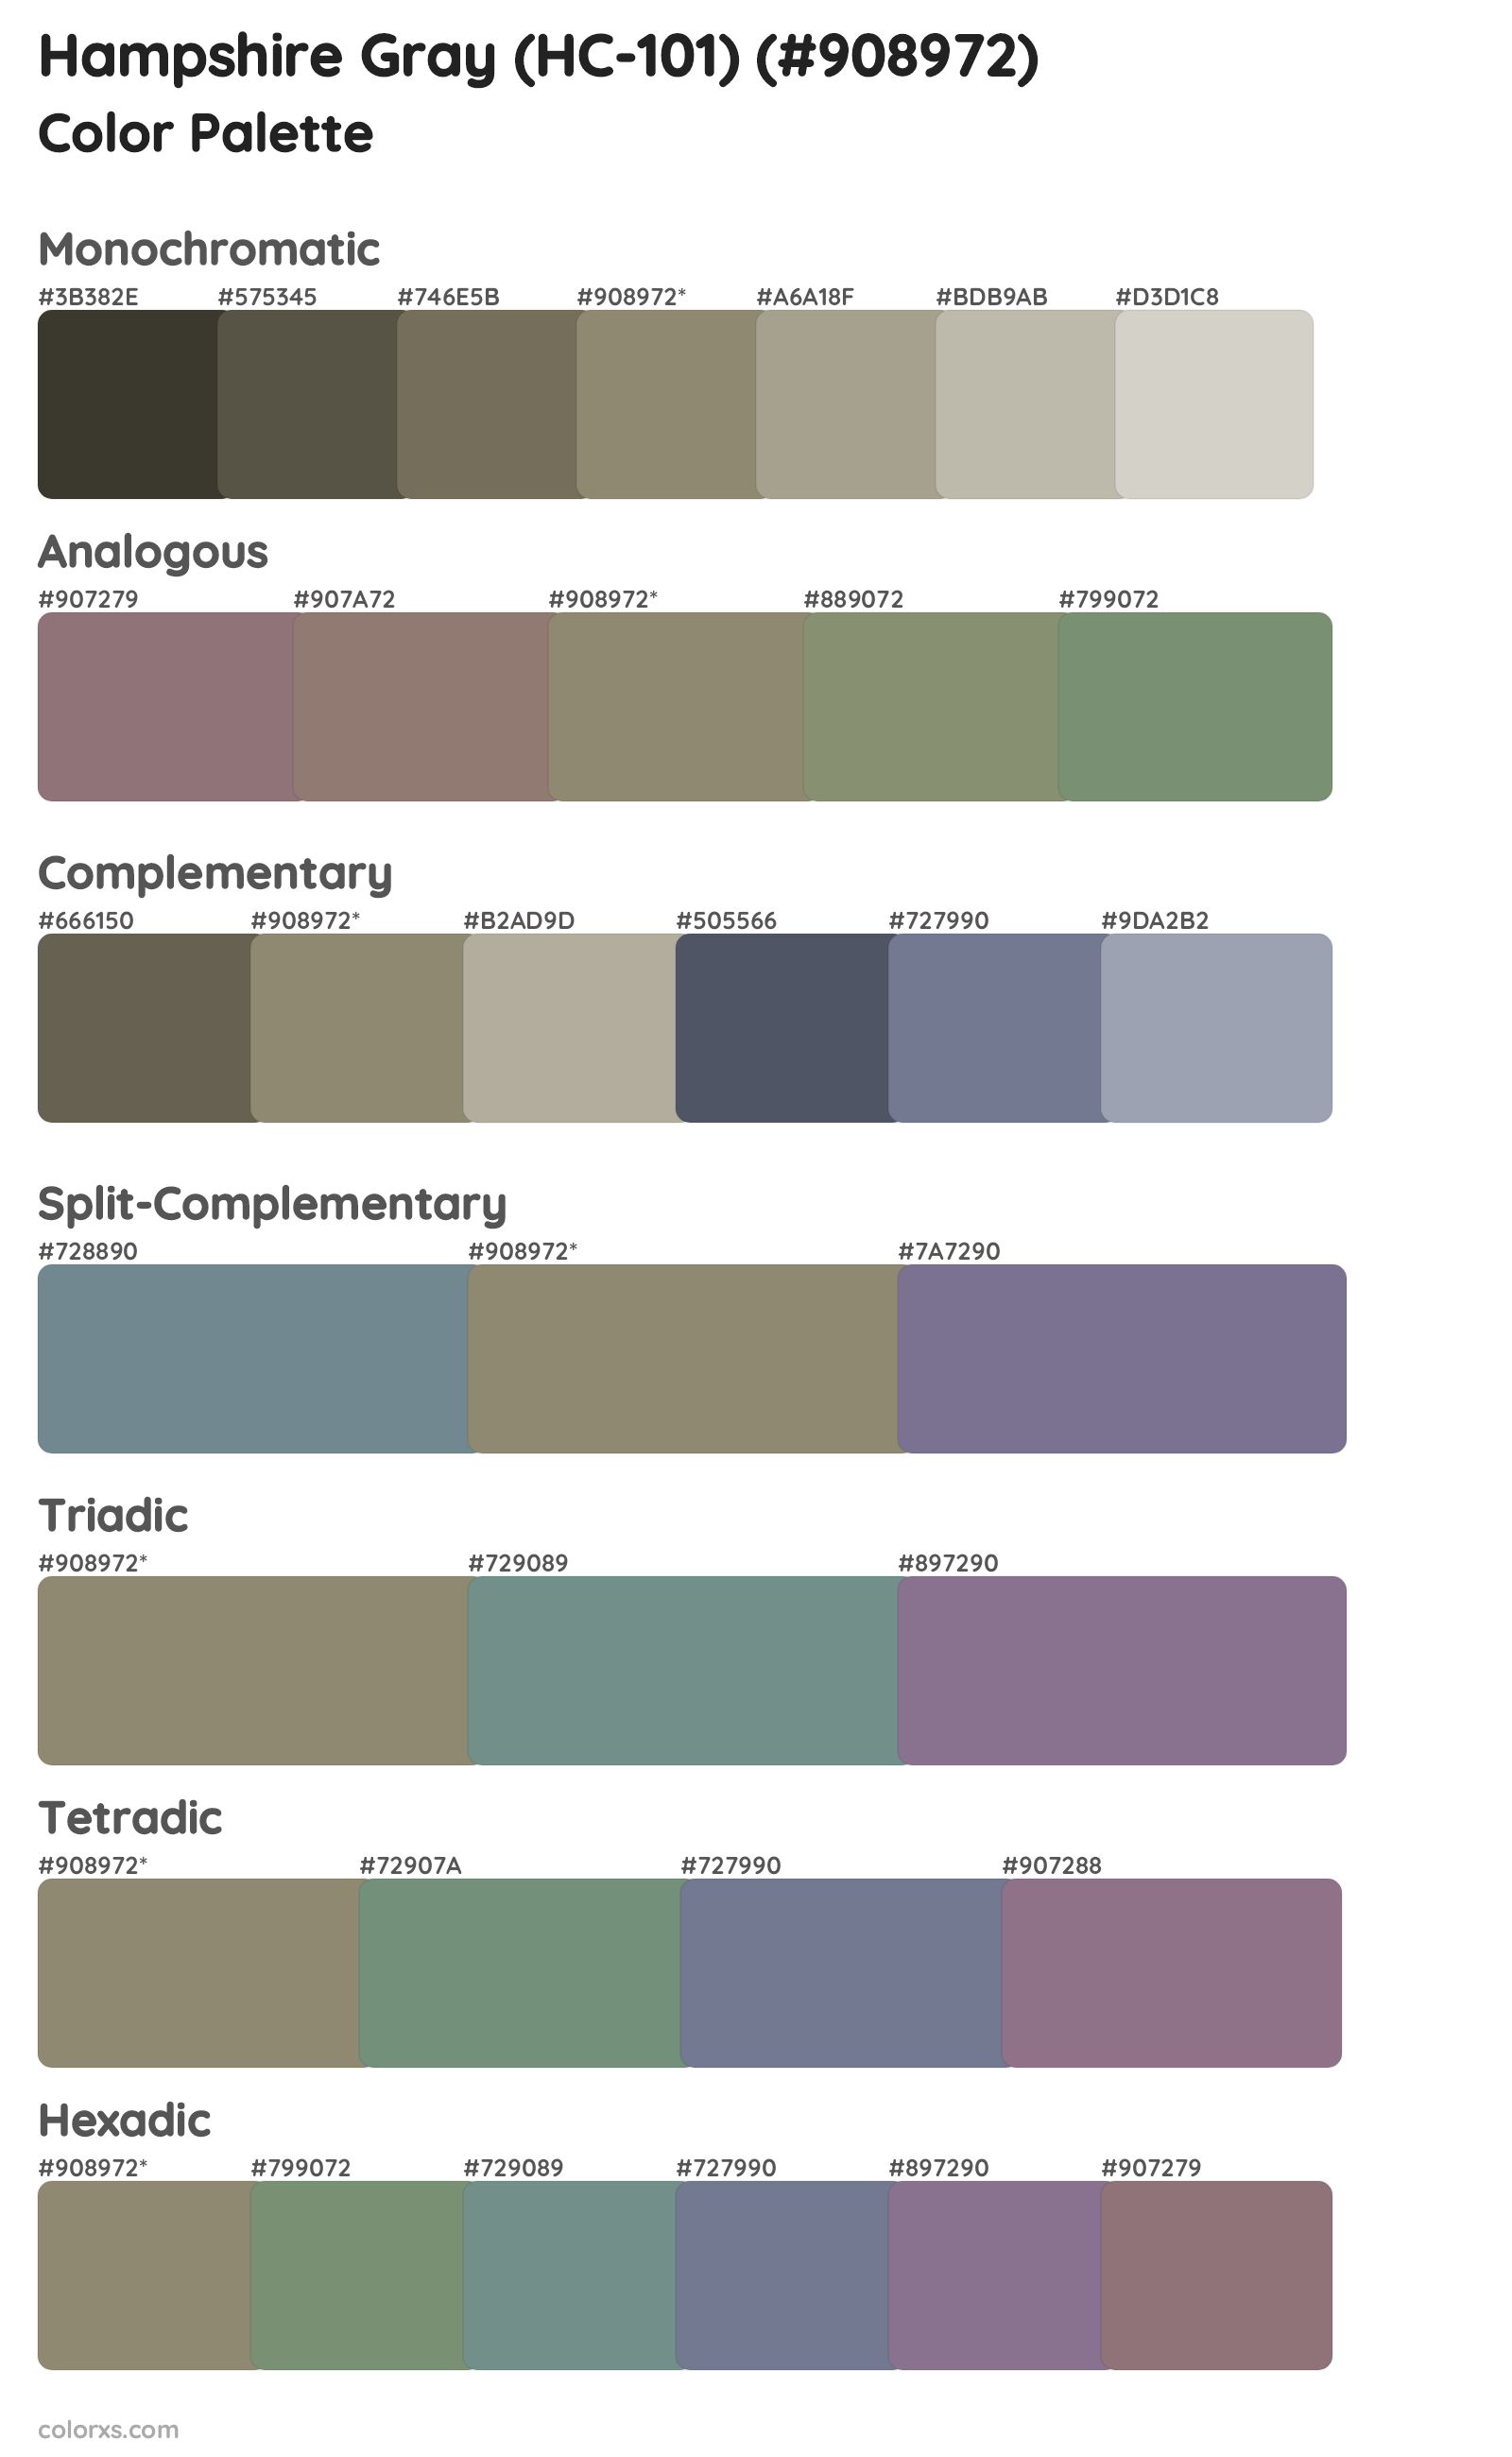 Hampshire Gray (HC-101) Color Scheme Palettes